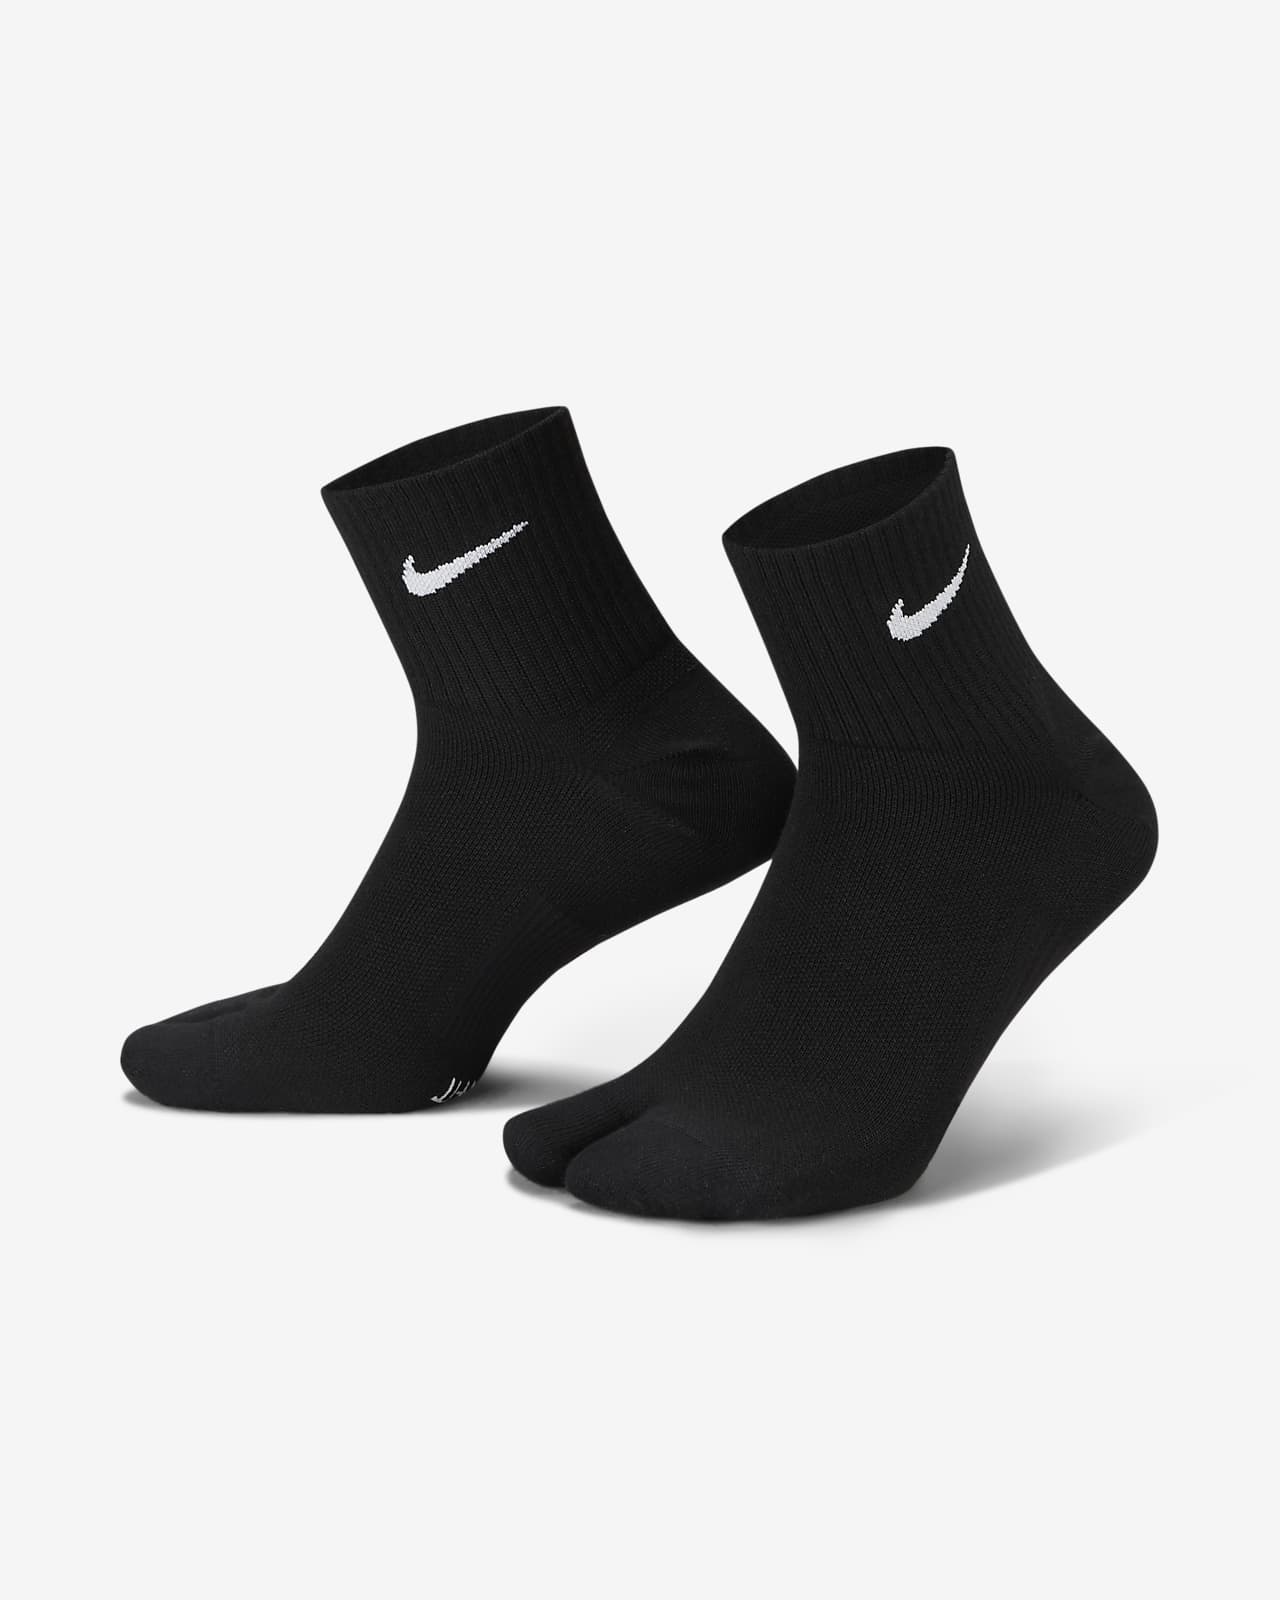 Lehké kotníkové ponožky Nike Everyday Plus s rozdělenou špičkou